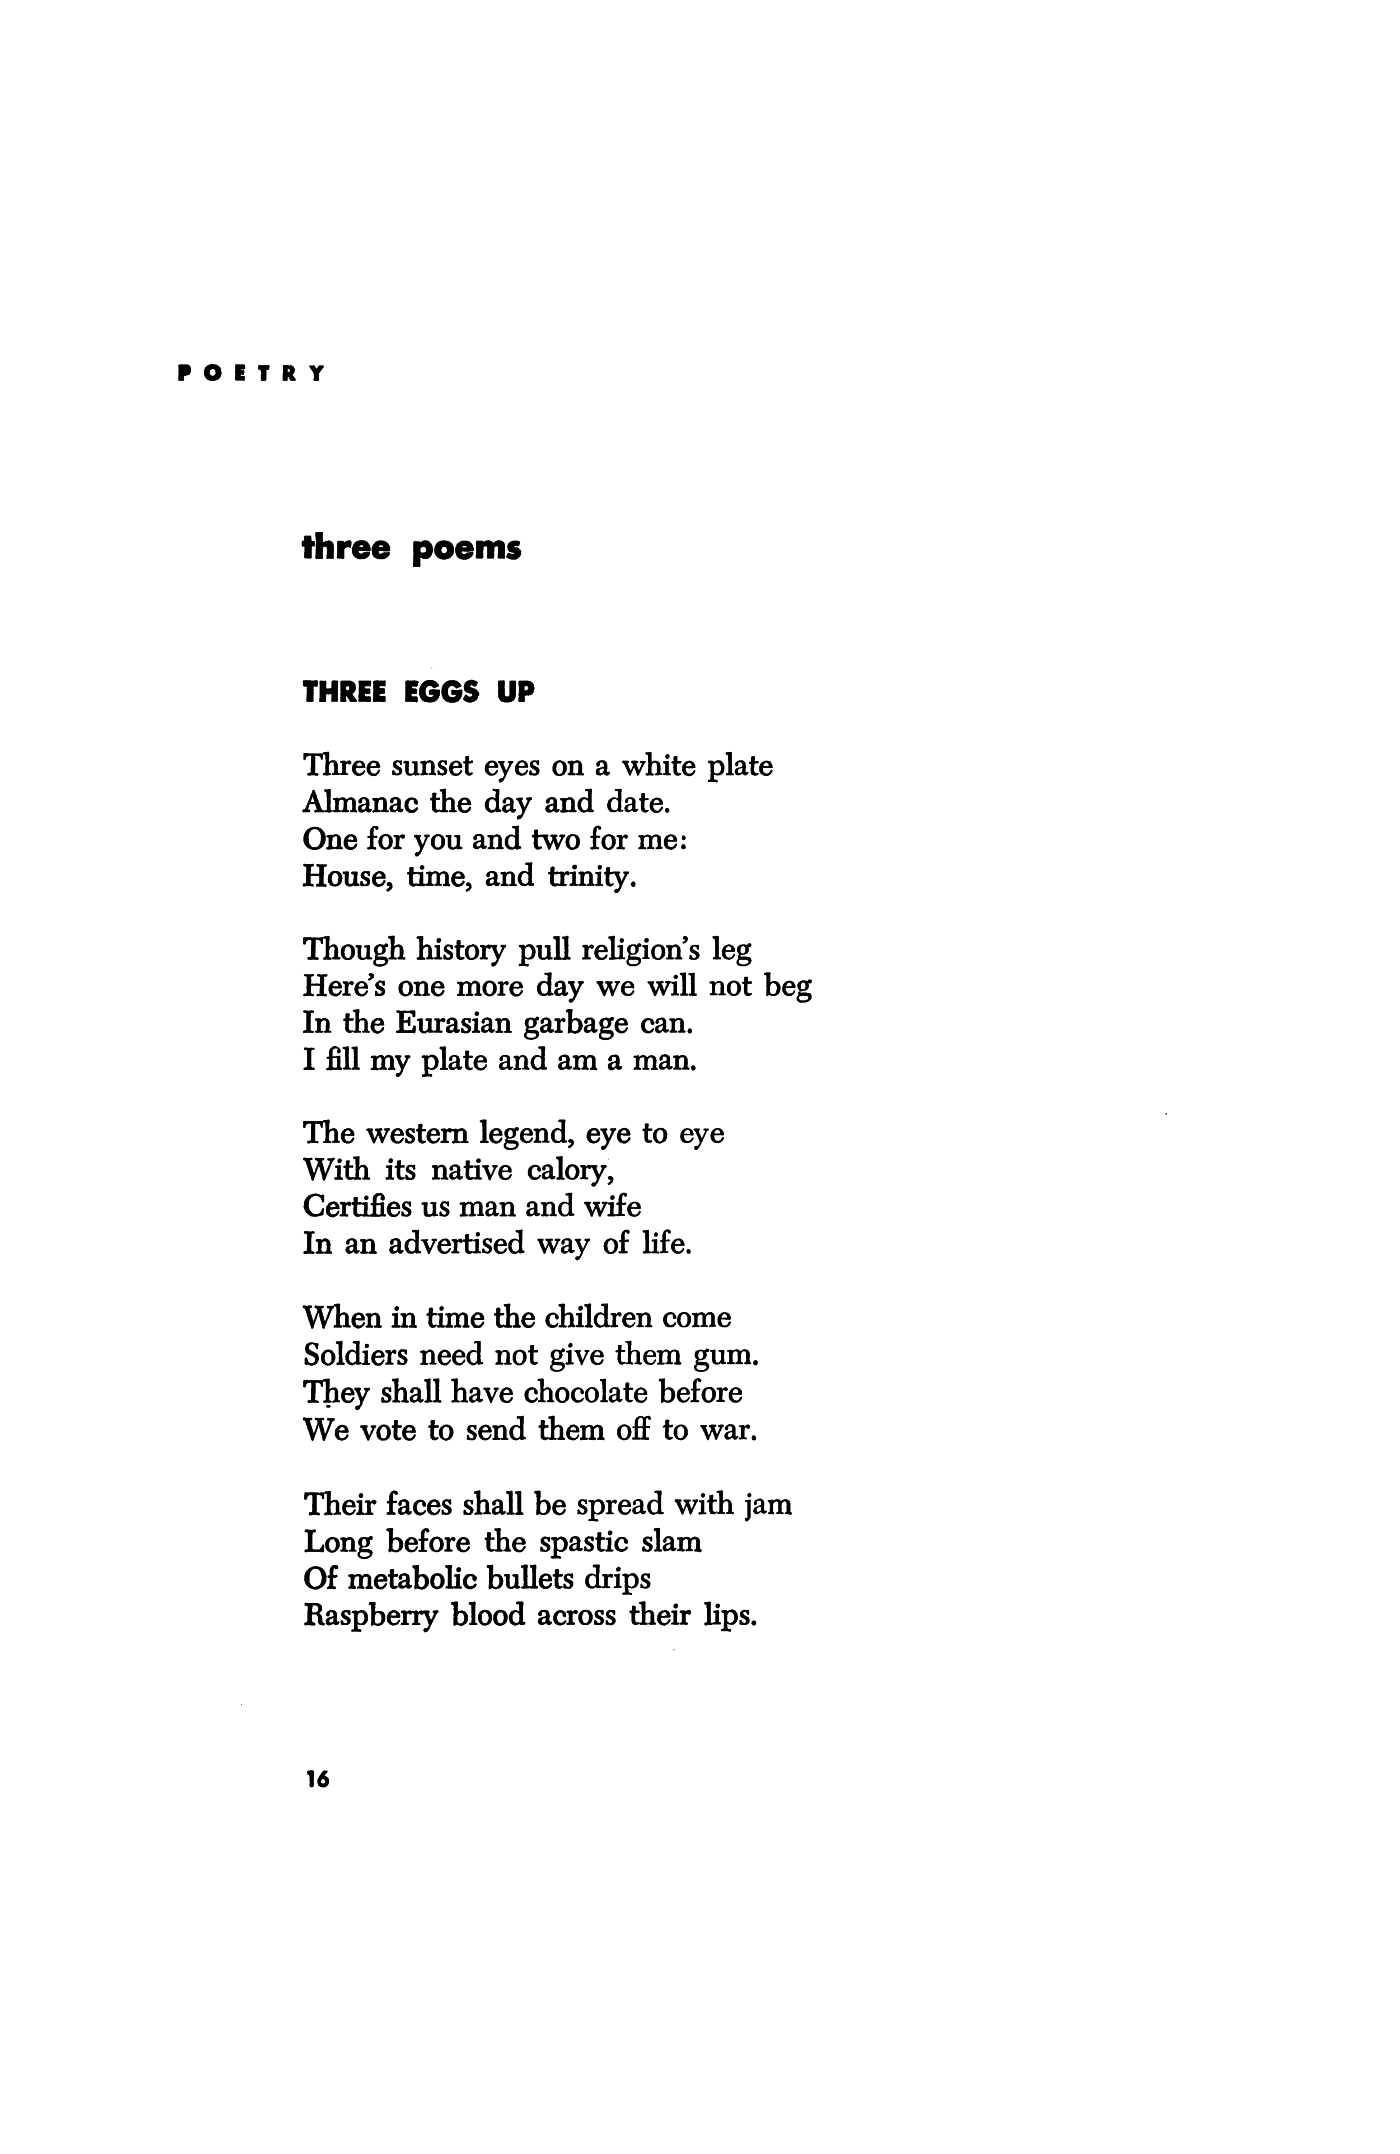 Kinder Egg passing under poem